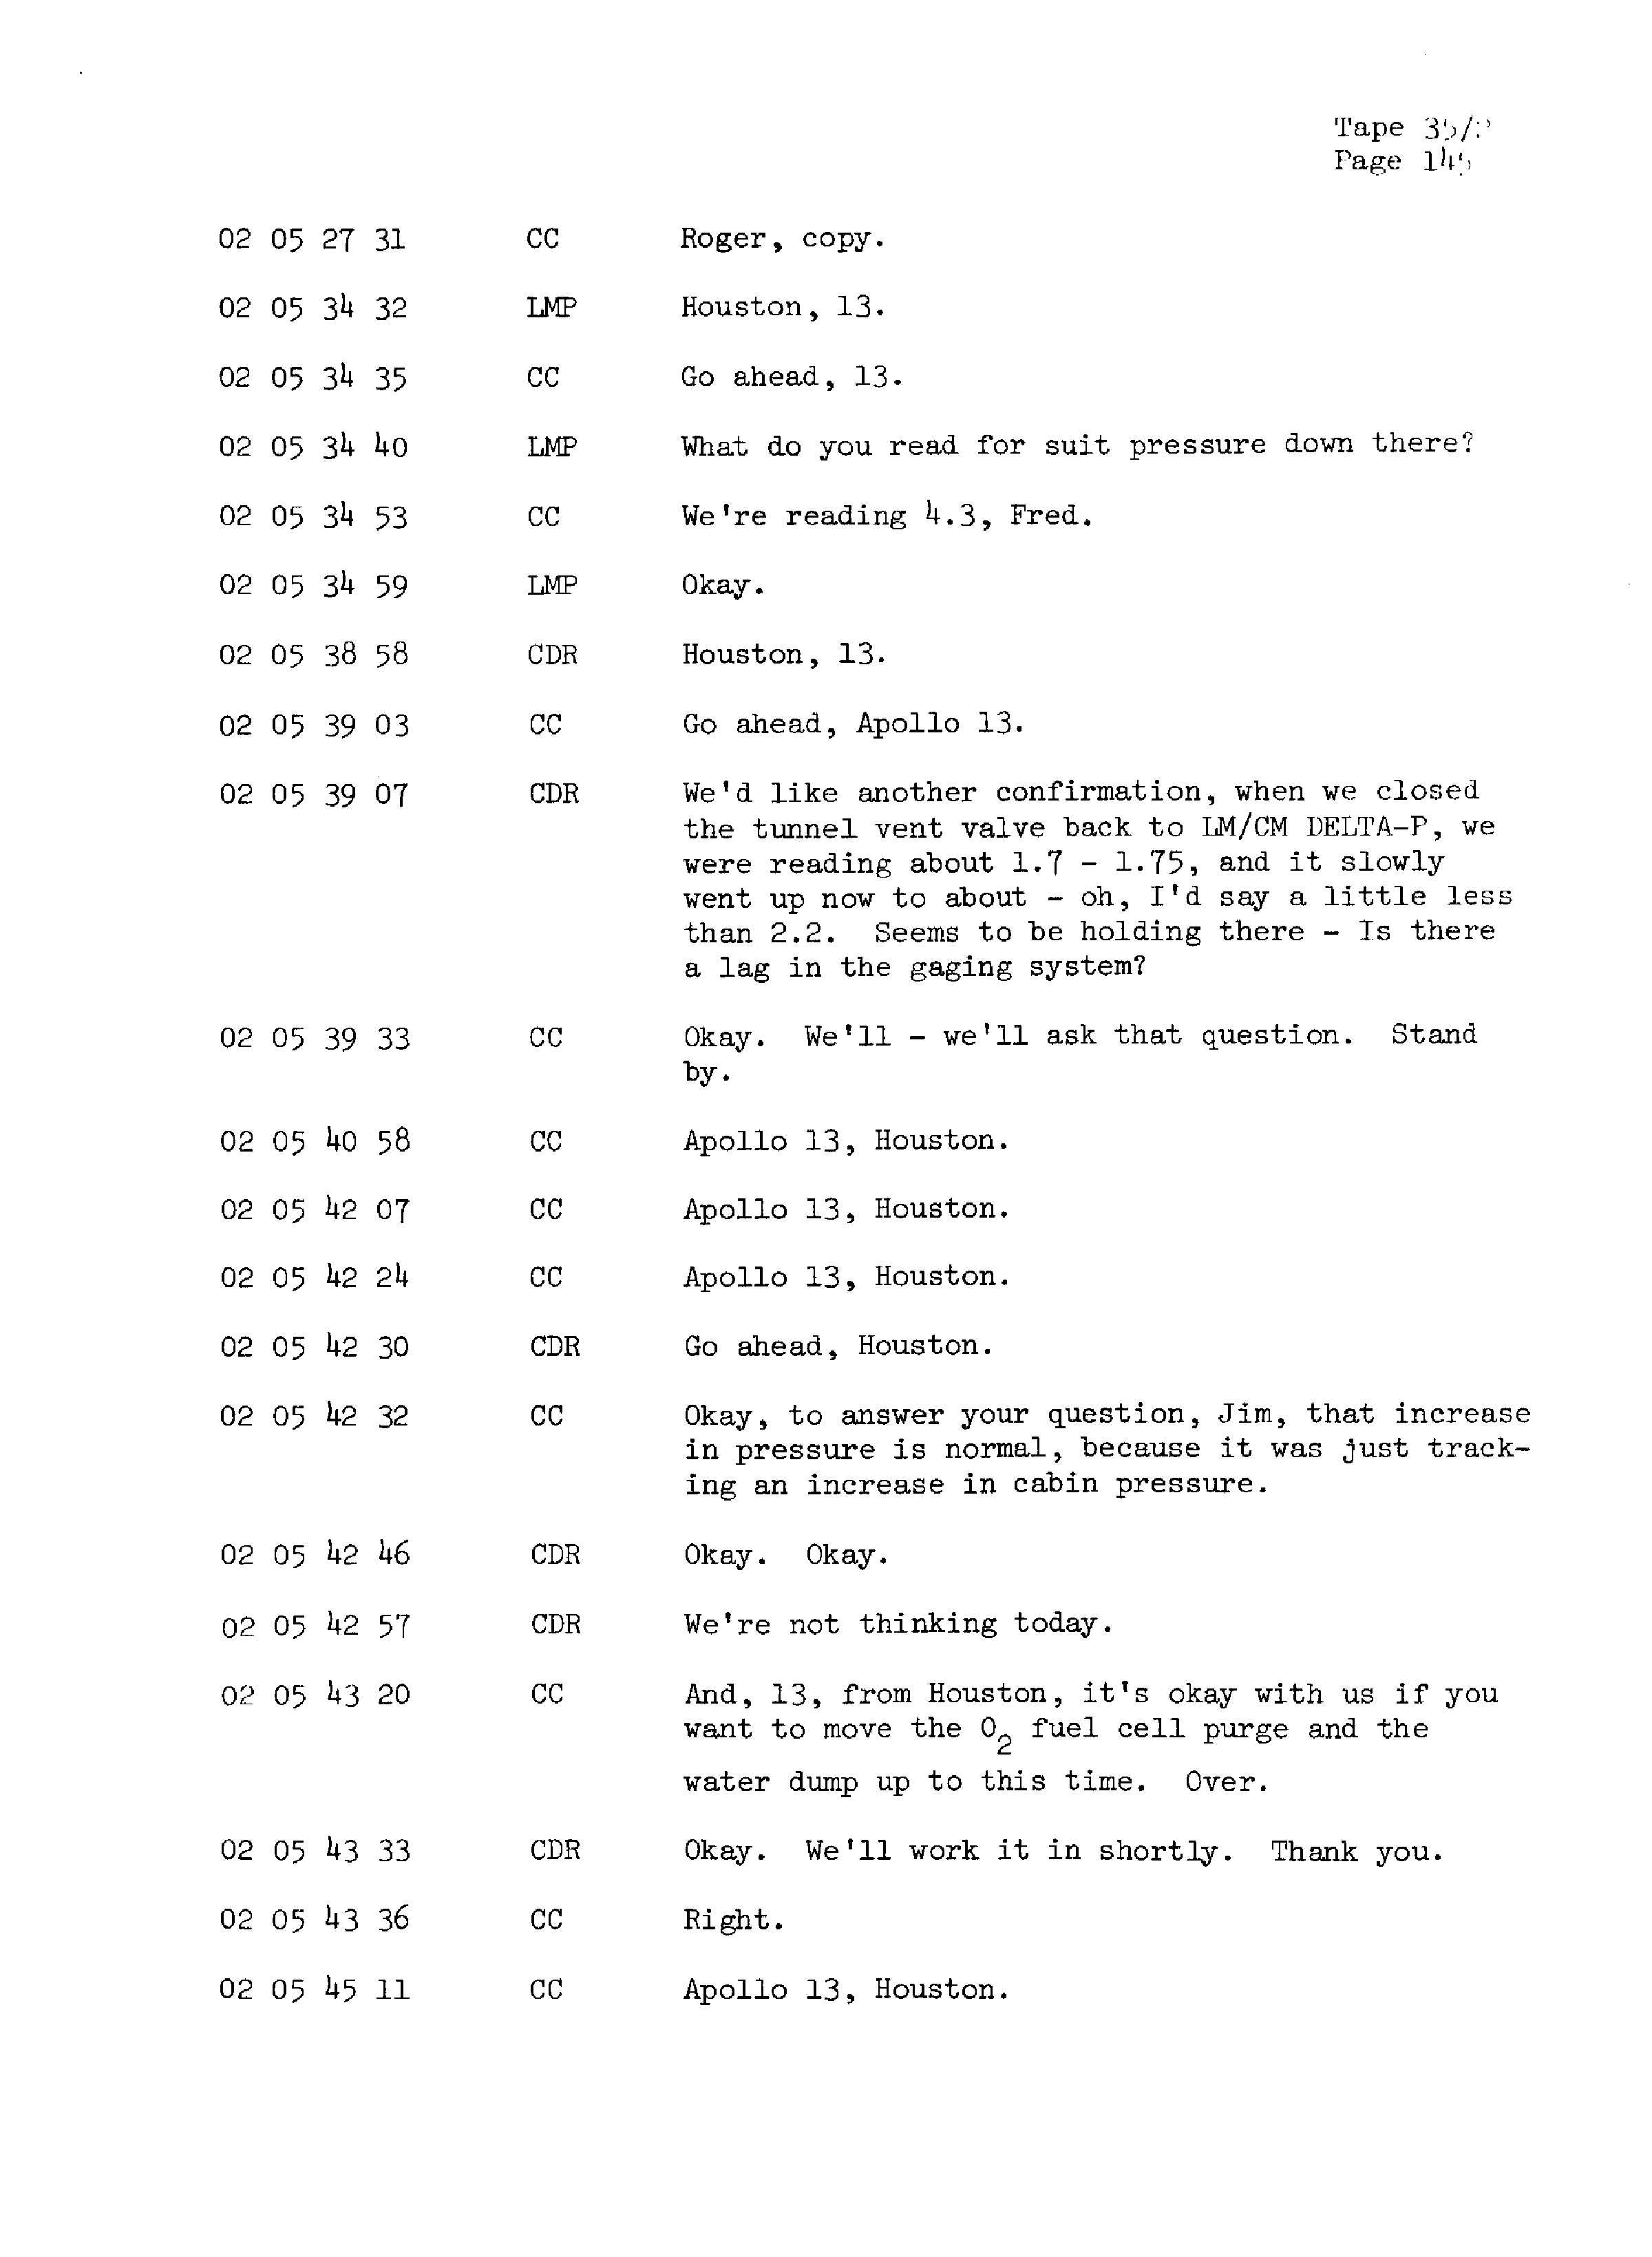 Page 152 of Apollo 13’s original transcript